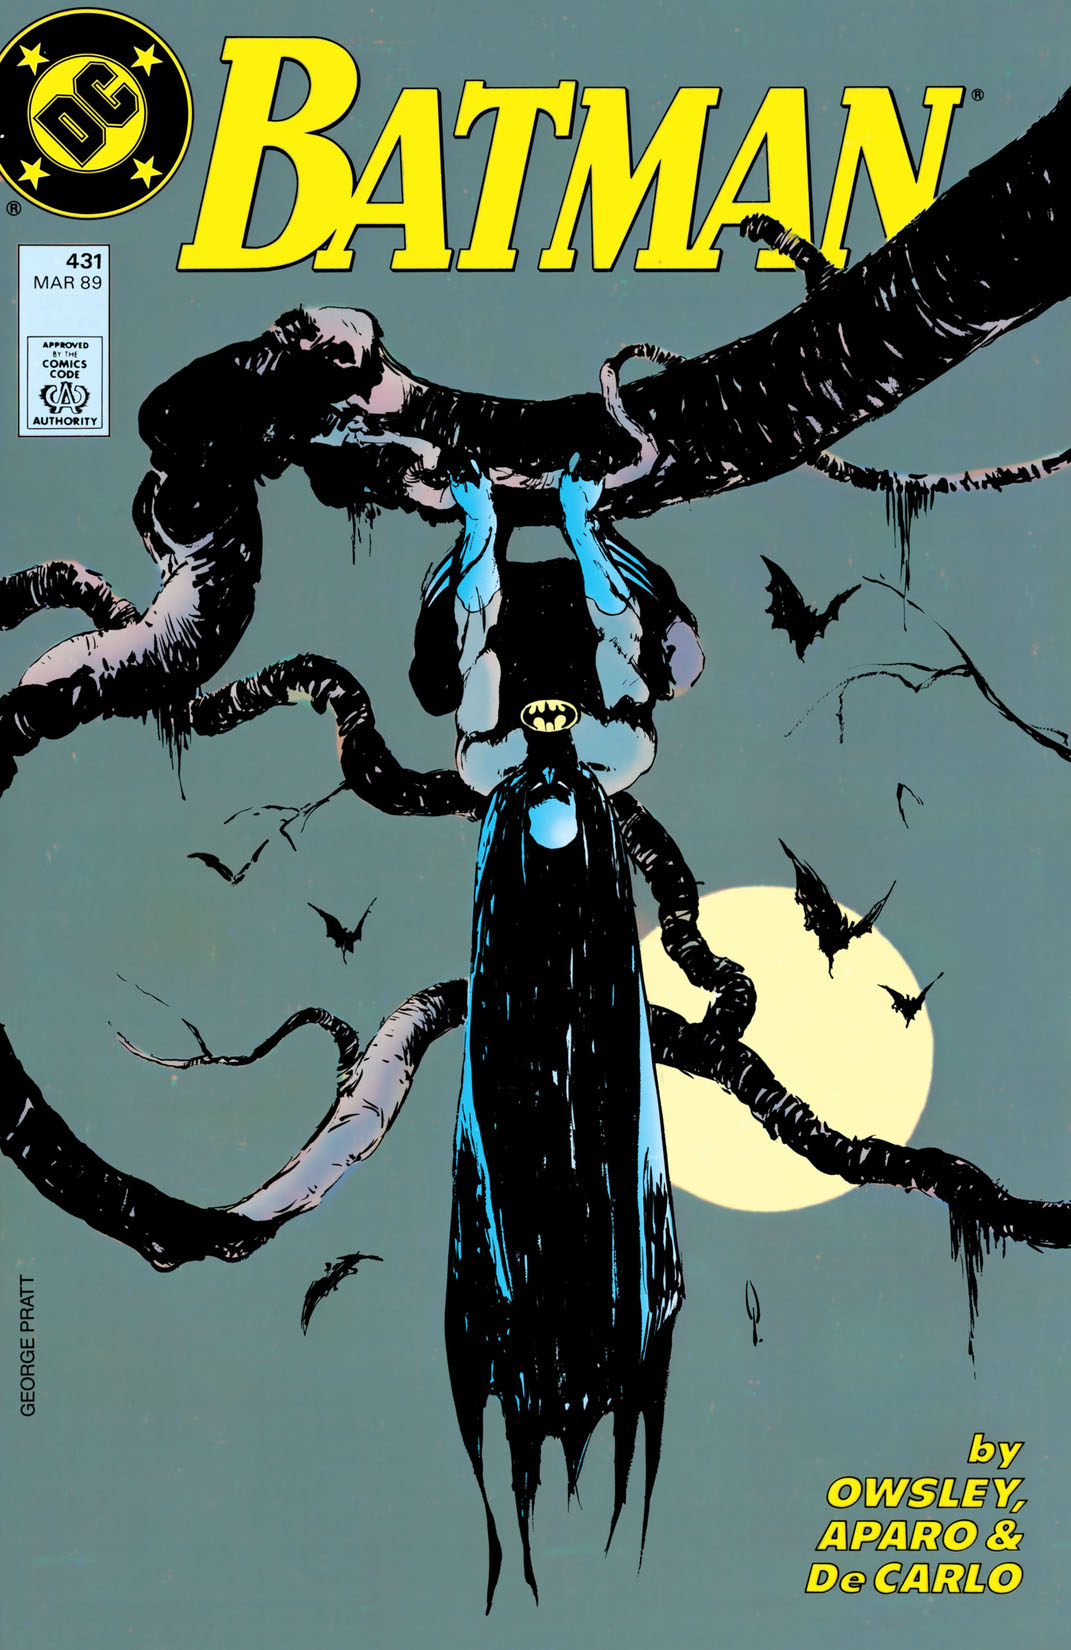 Batman (1940-) #431 preview images